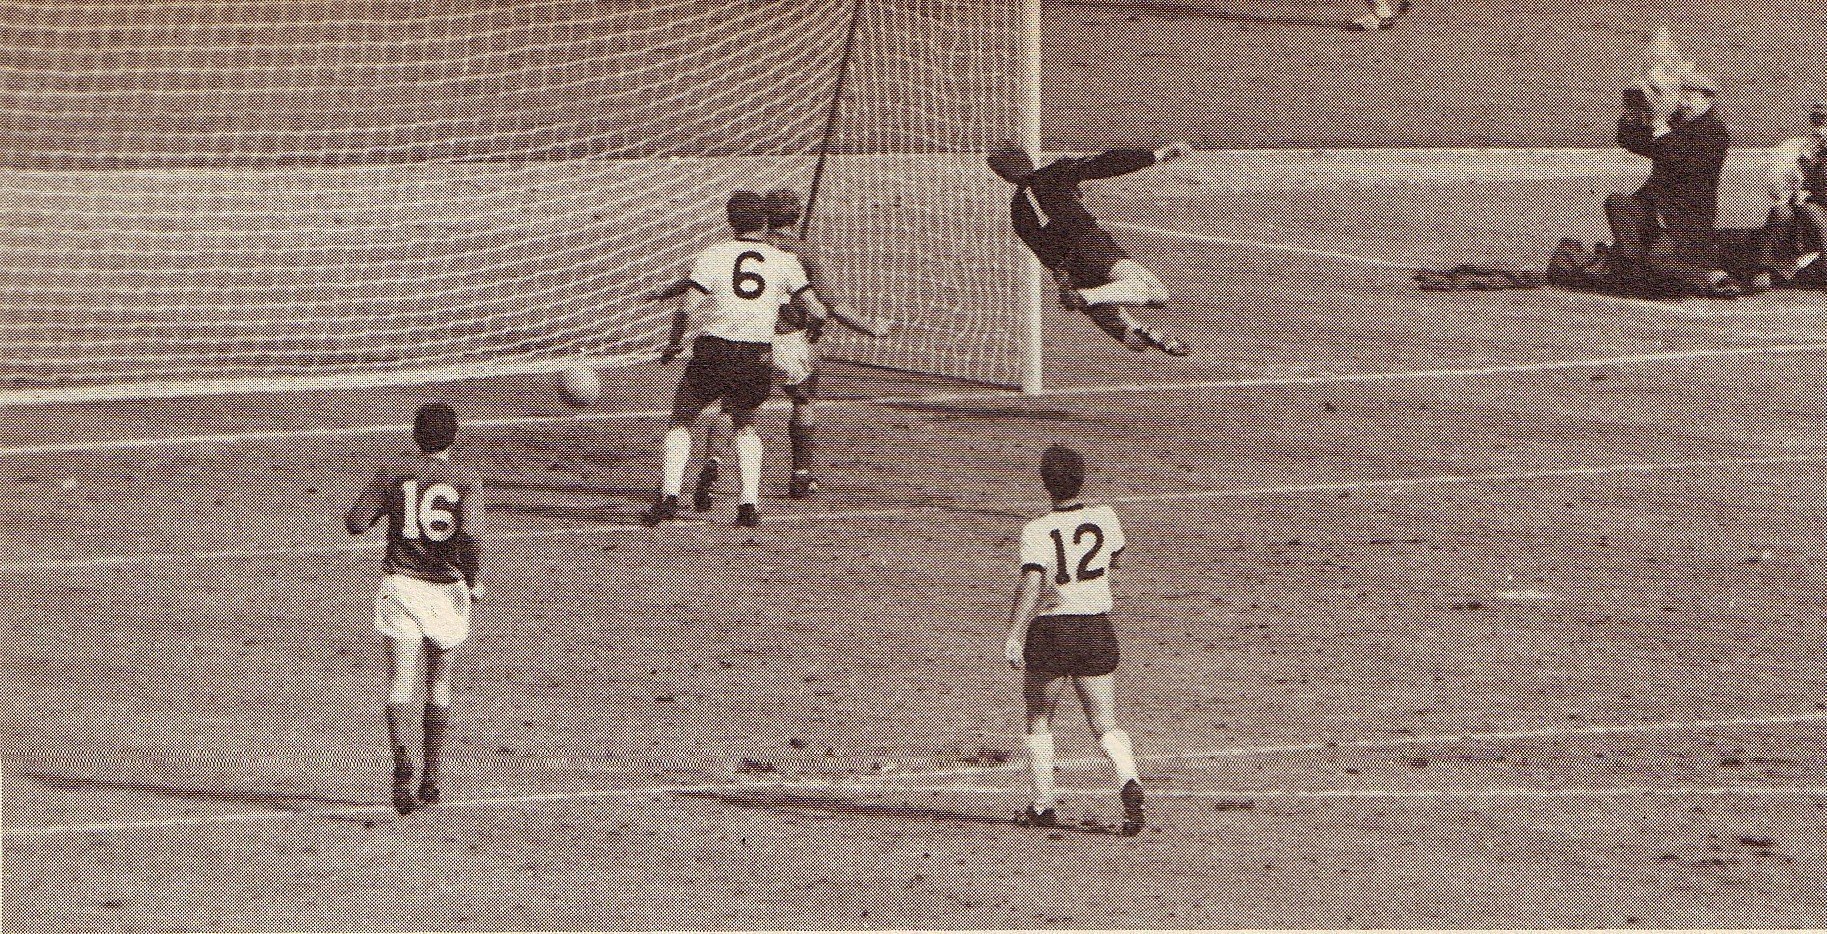 1966 Final the third Eng goal